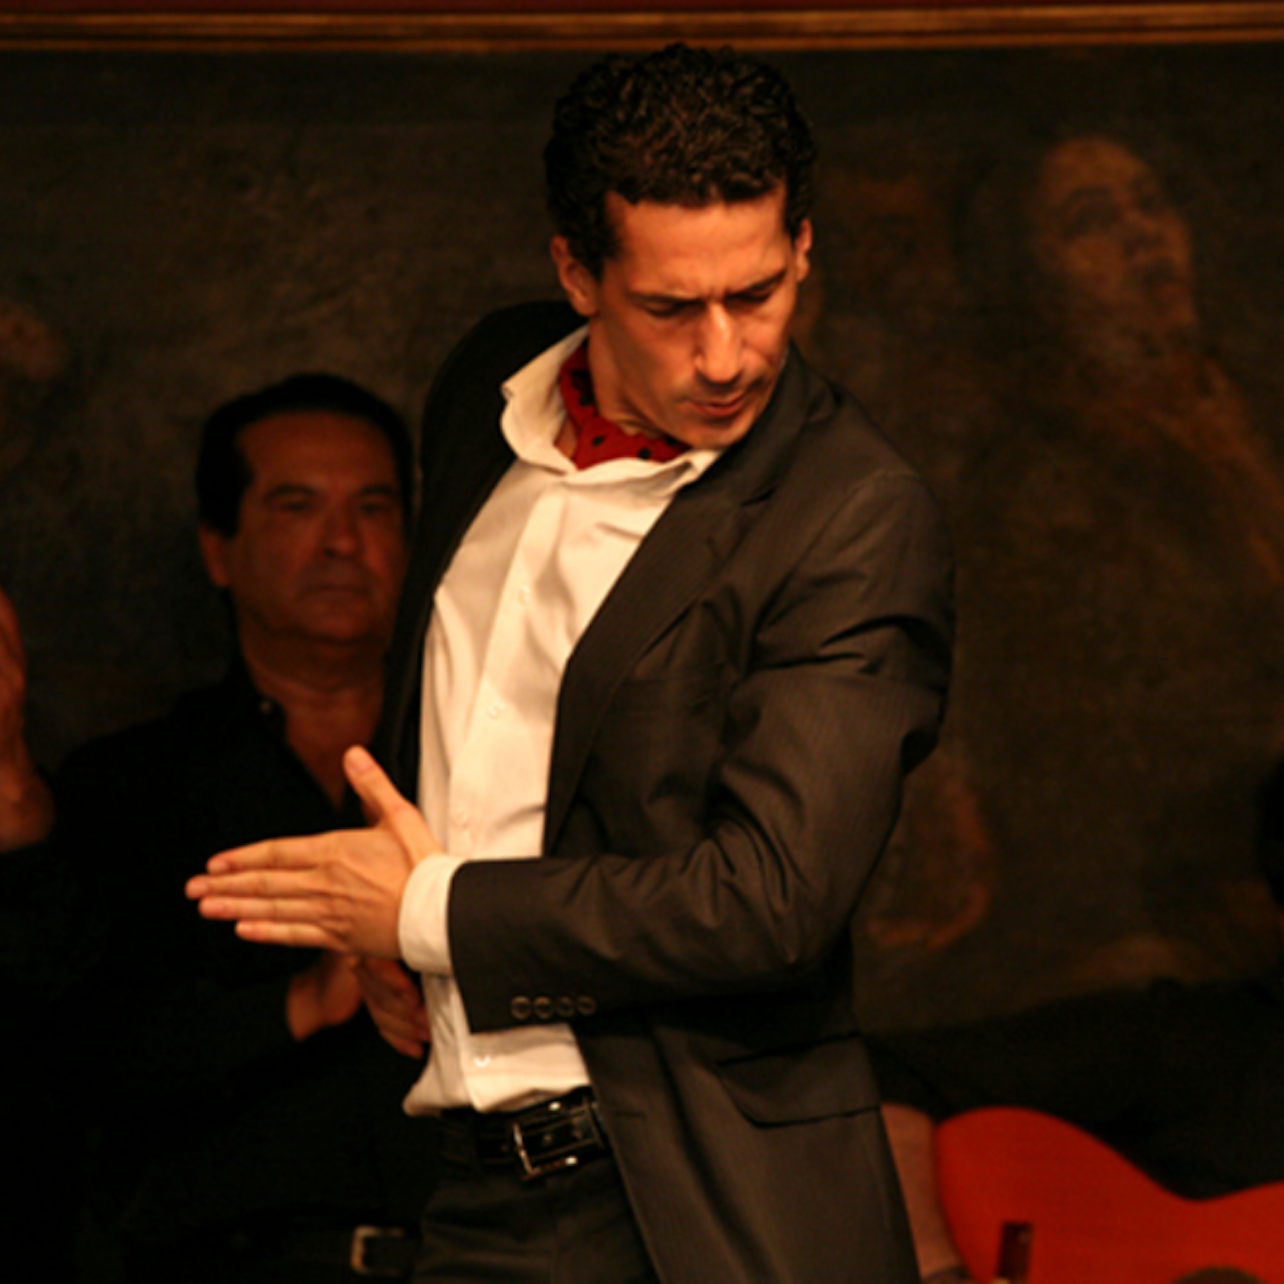 Corral de la Moreria: Flamenco Show + Dinner - Accommodations in Madrid